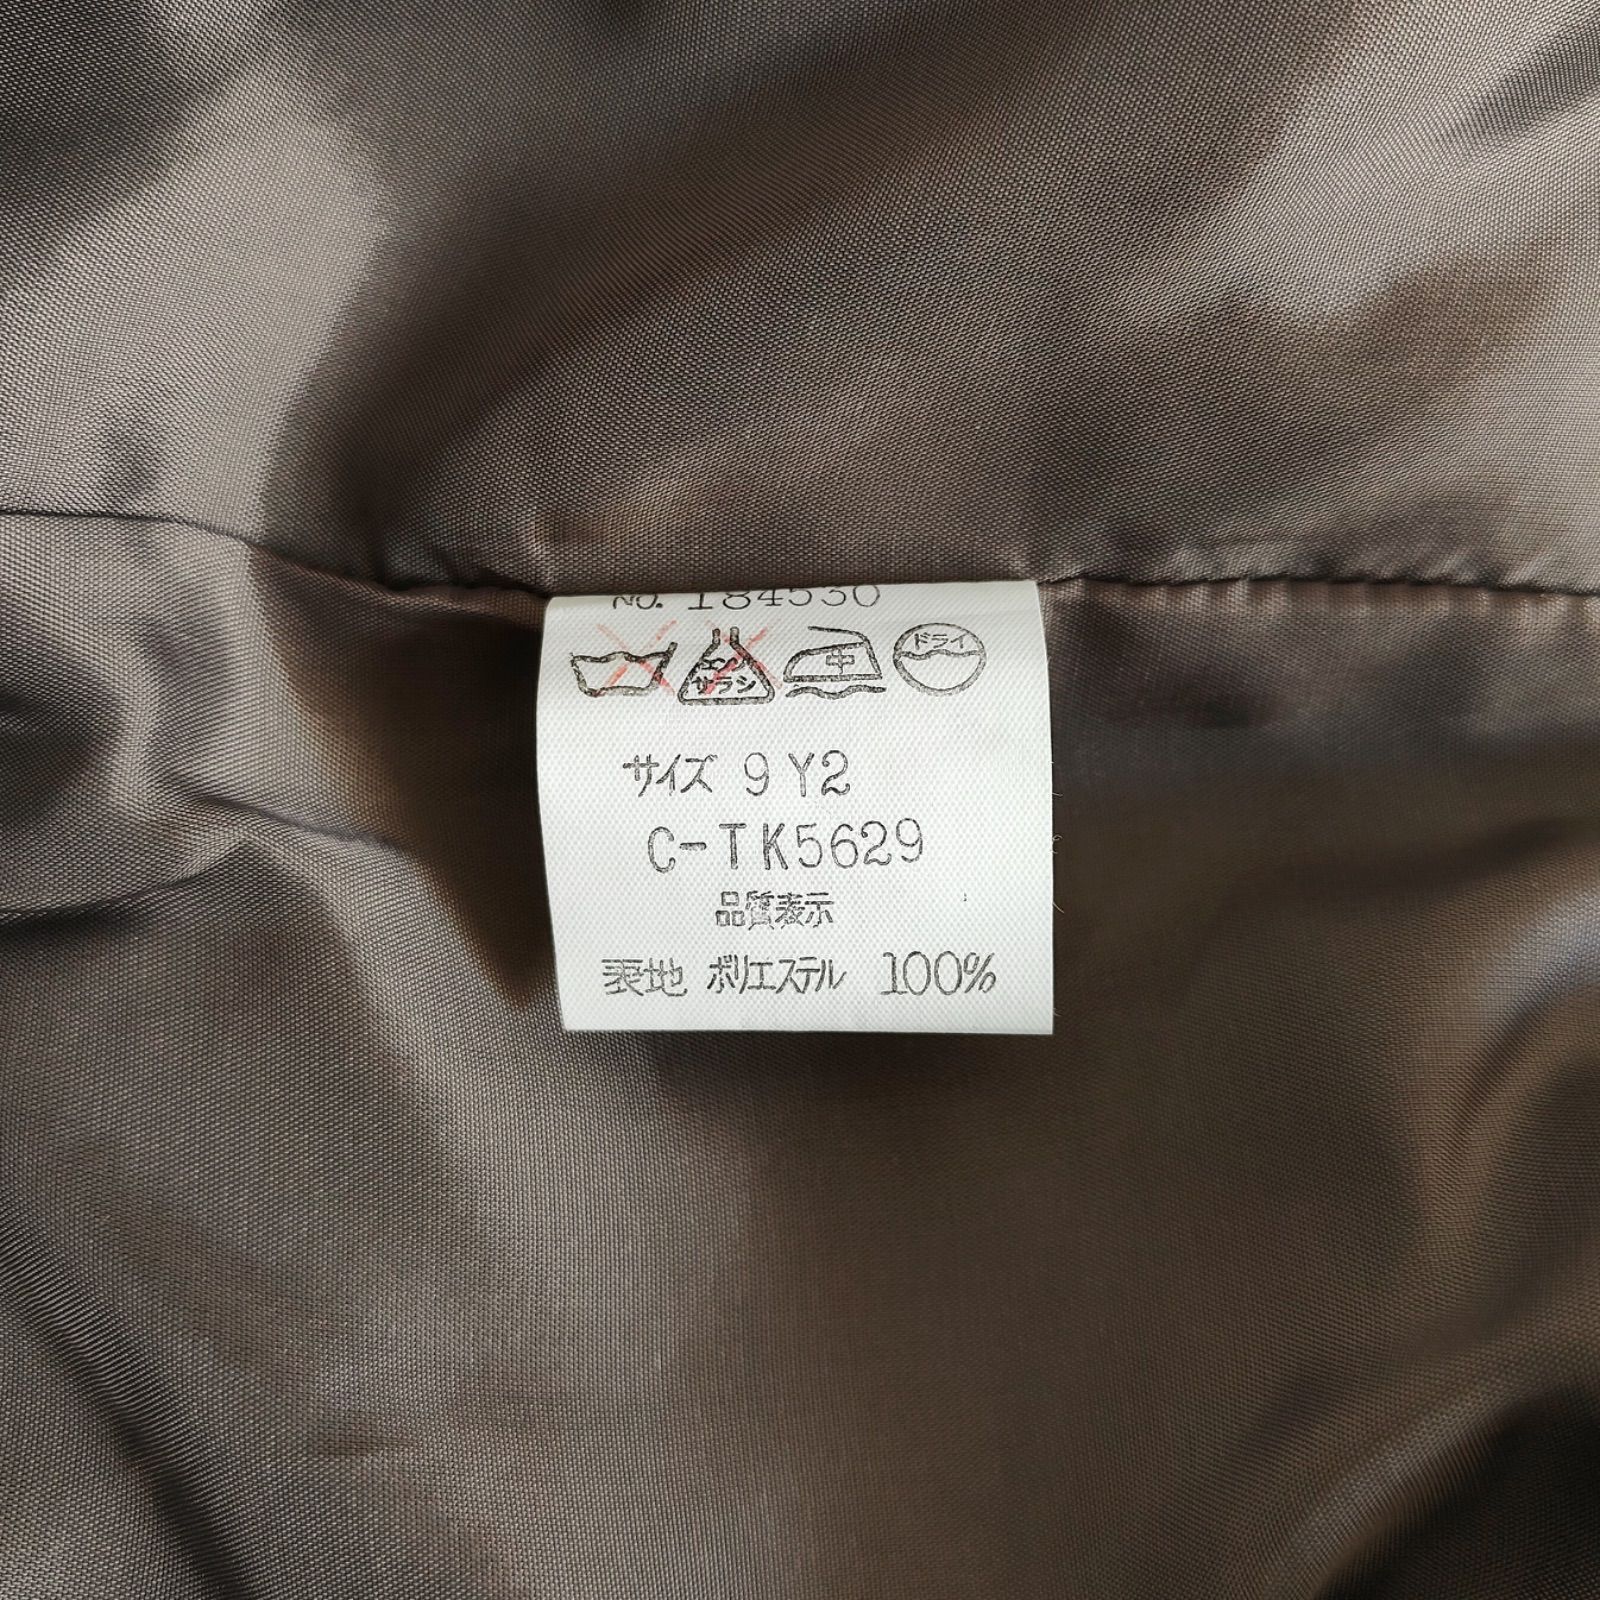 新品未使用タグ付き定価新品 ノーカラーコート ショートジャケット 金釦 長袖 カーキ グリーン 深緑色